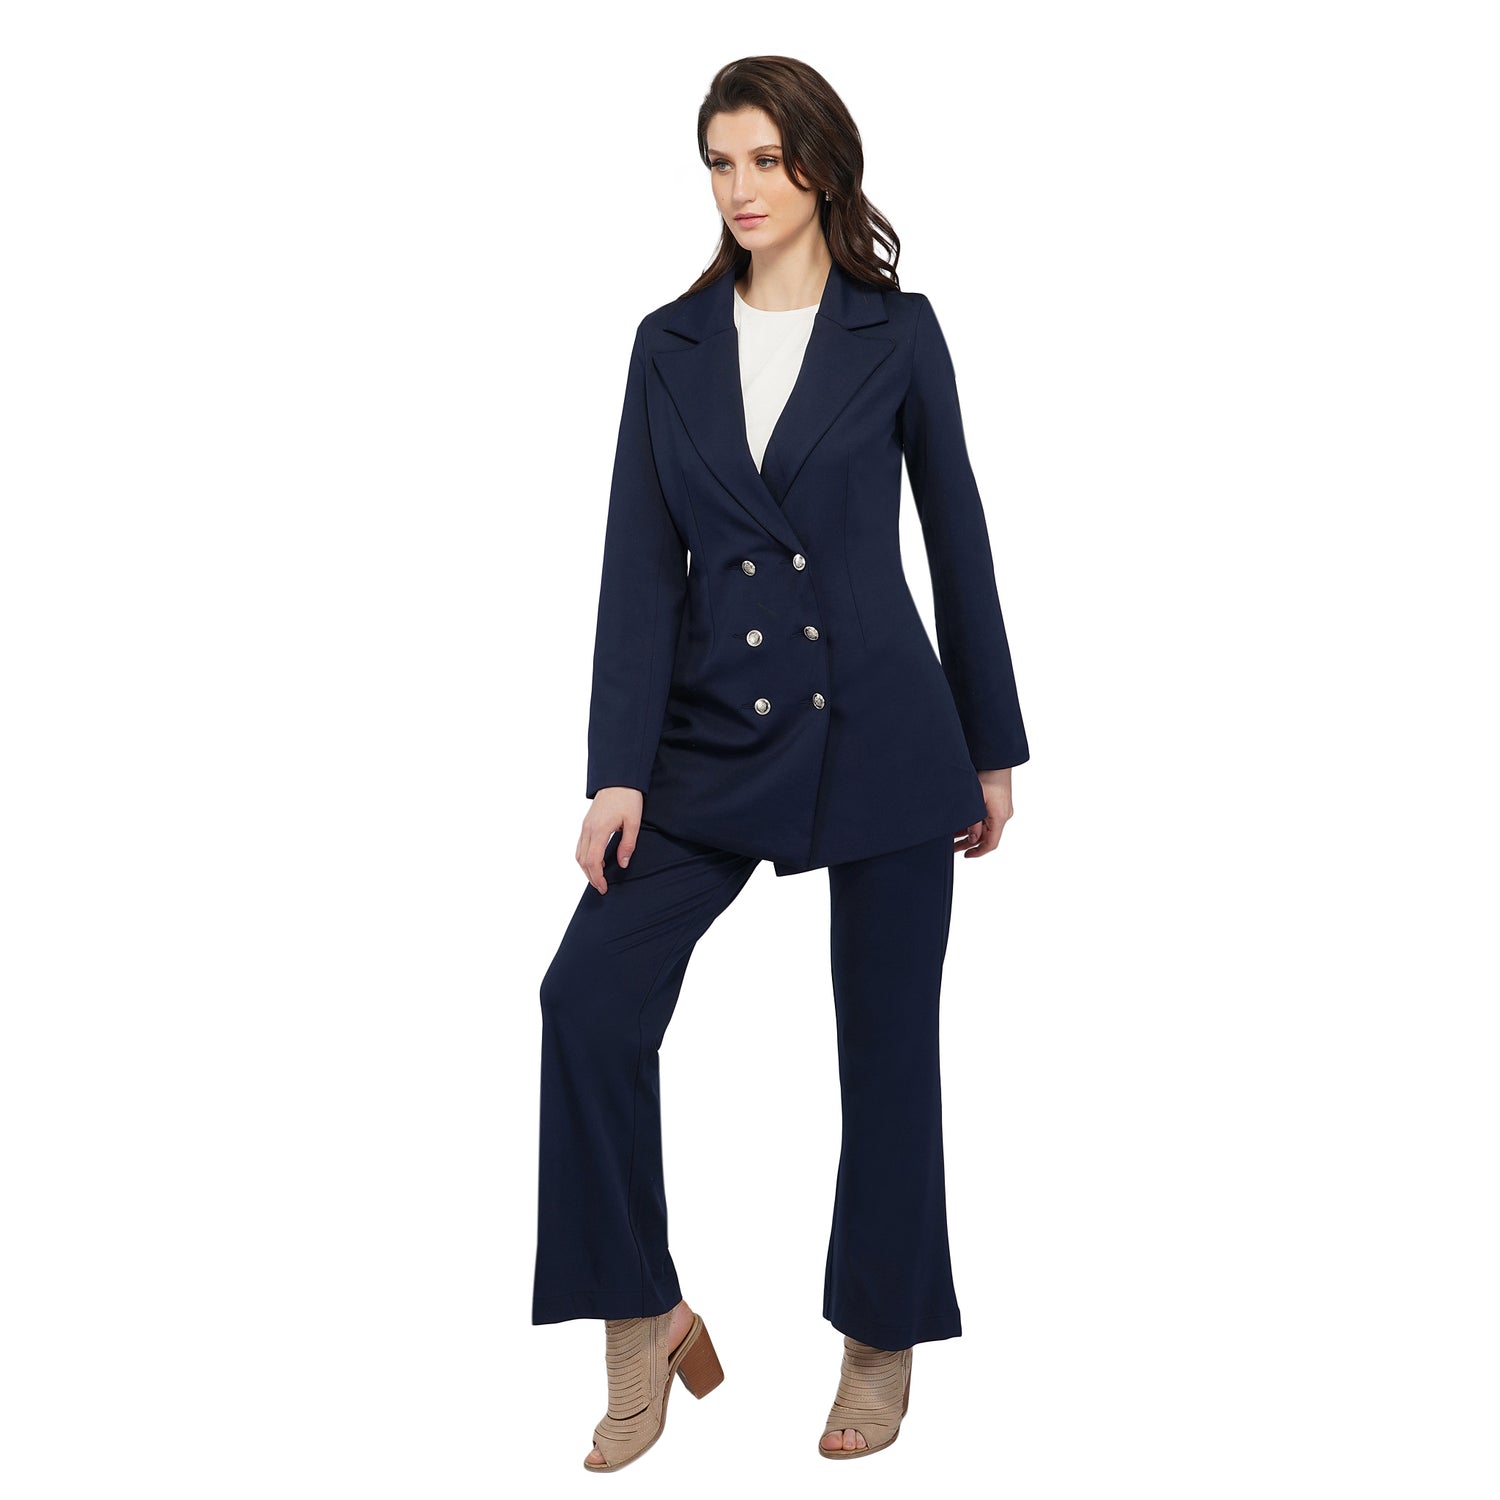 Women's Suit Jackets | The Work Uniform Company